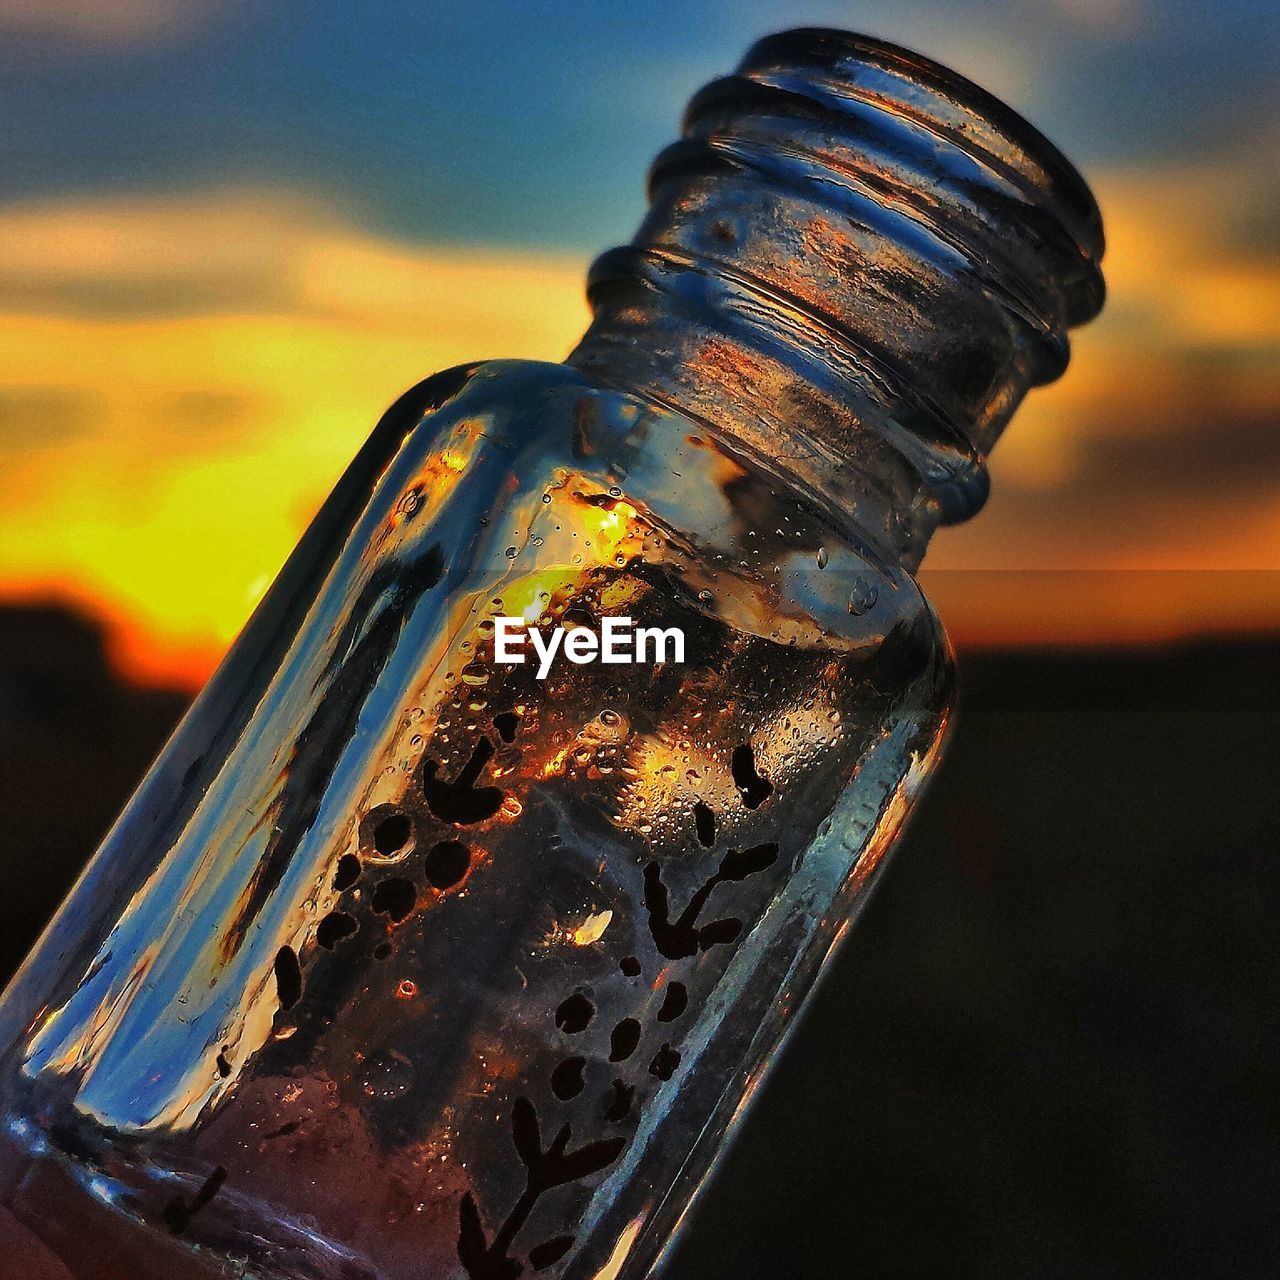 Glass bottle against sky at sunset